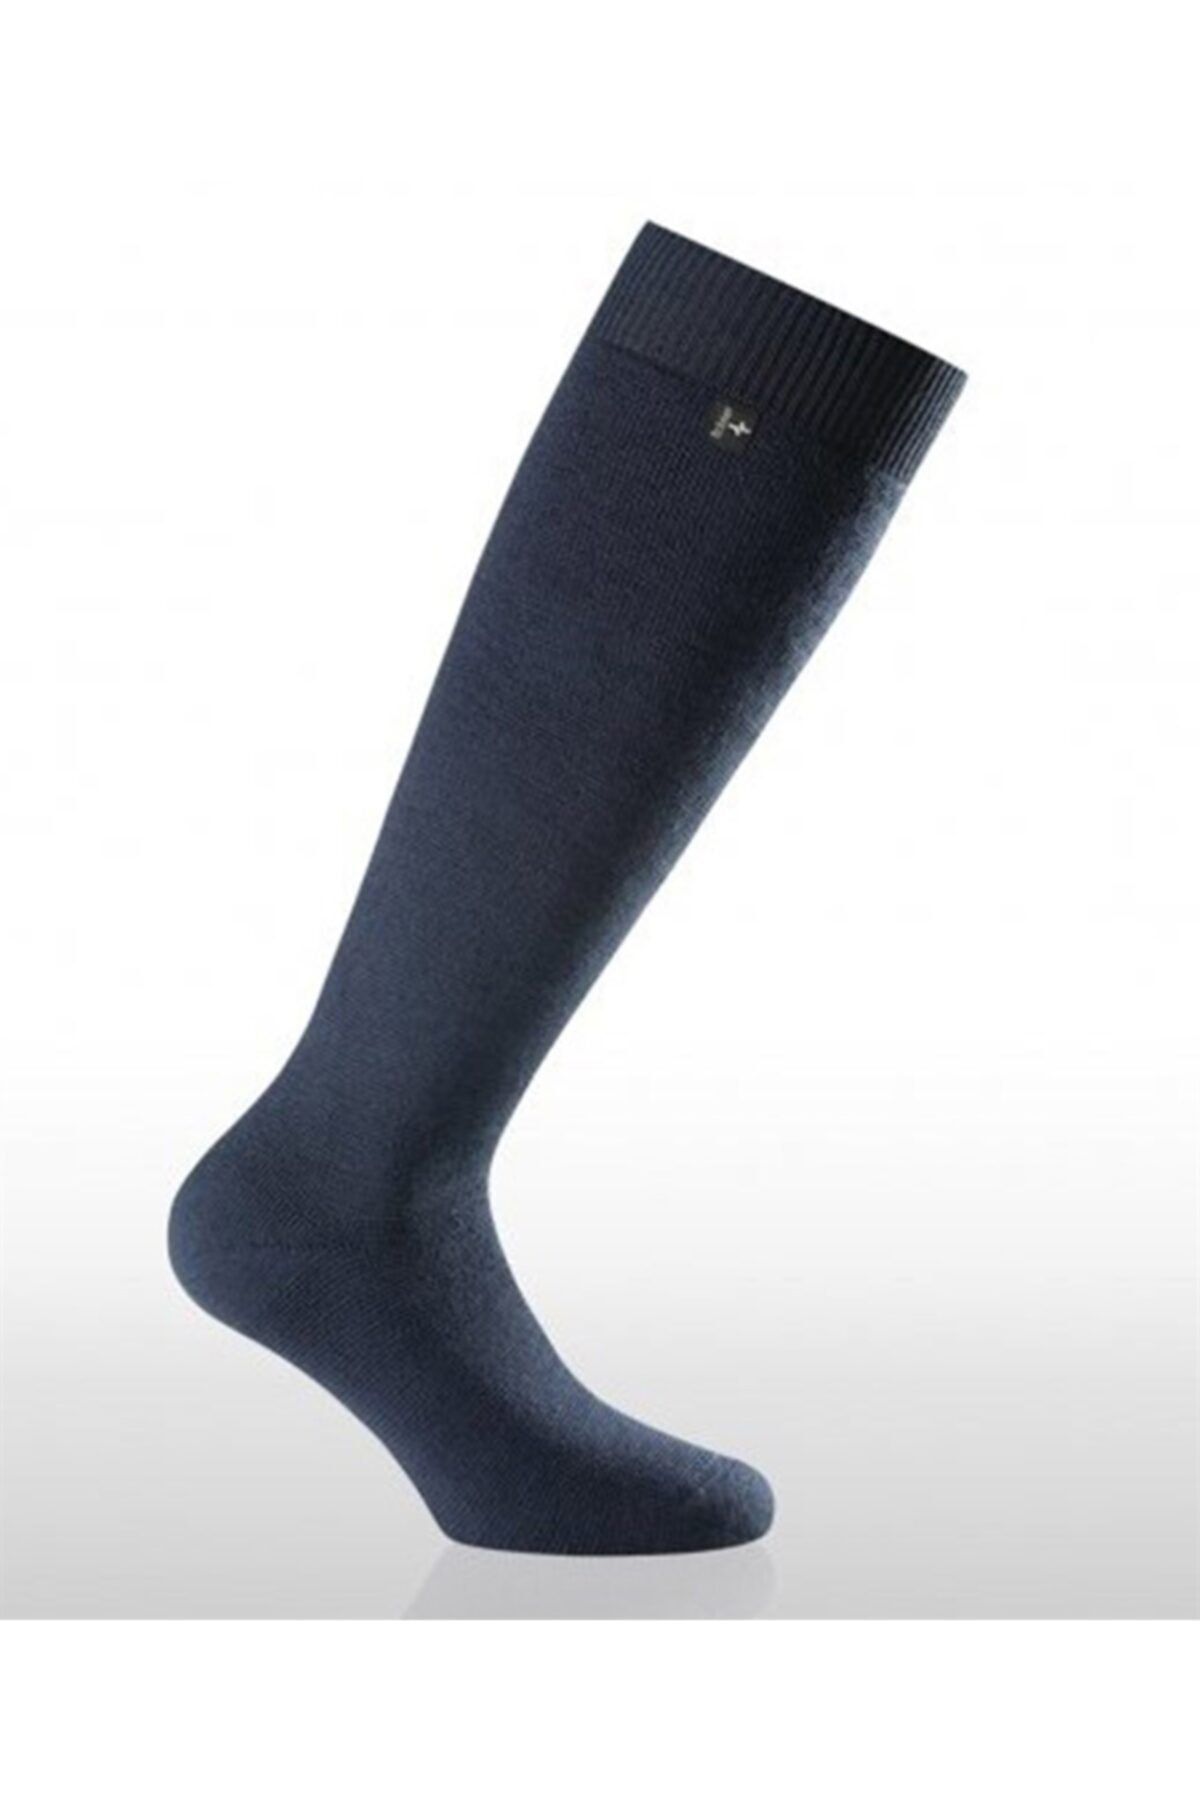 Rohner Skı Thermal Socks